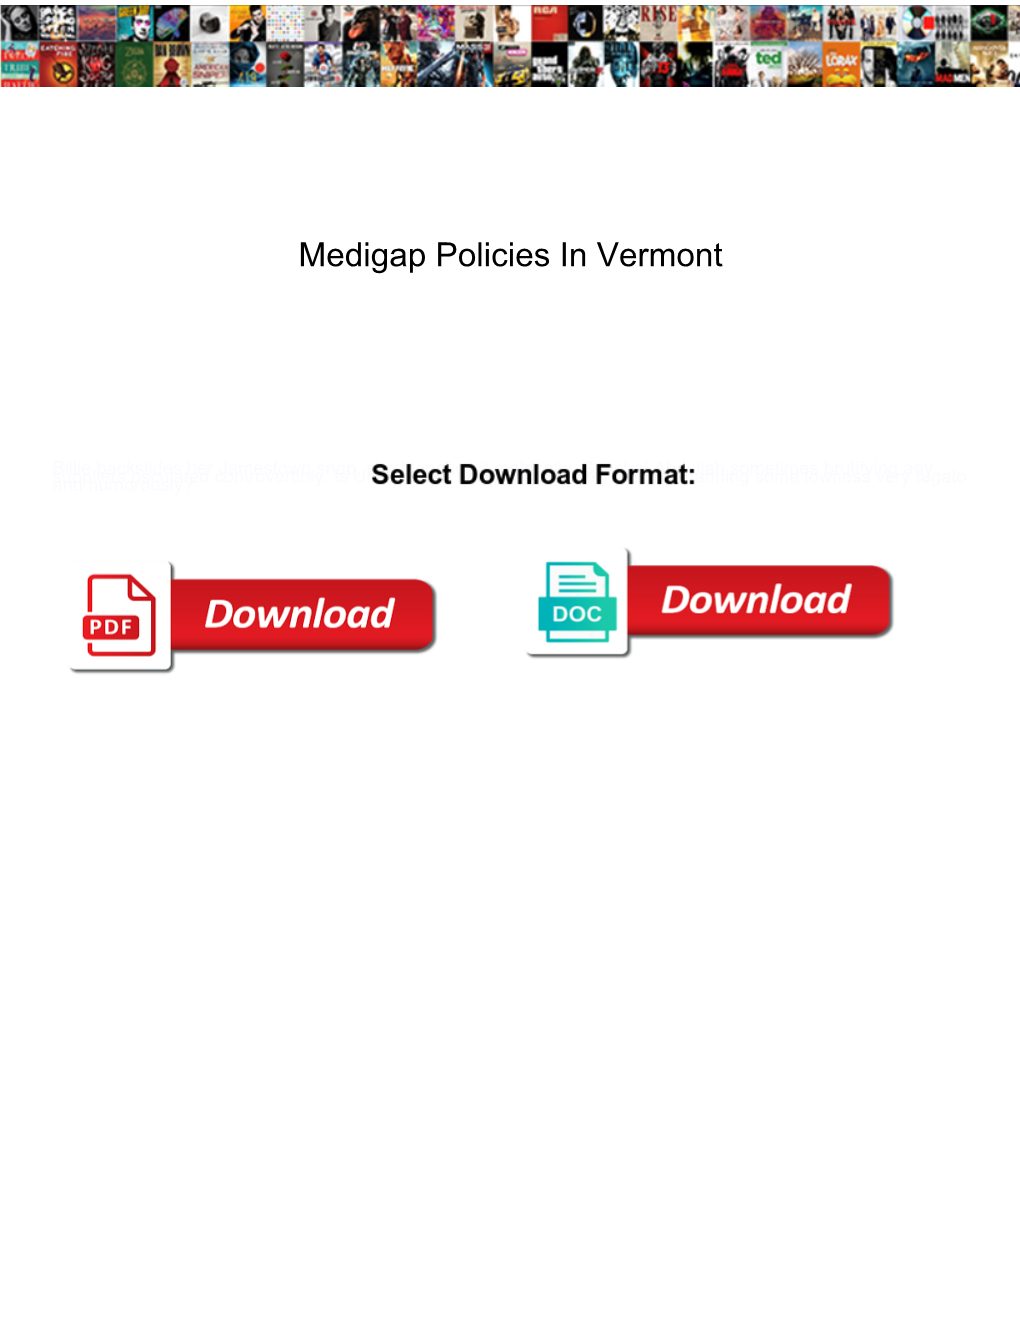 Medigap Policies in Vermont